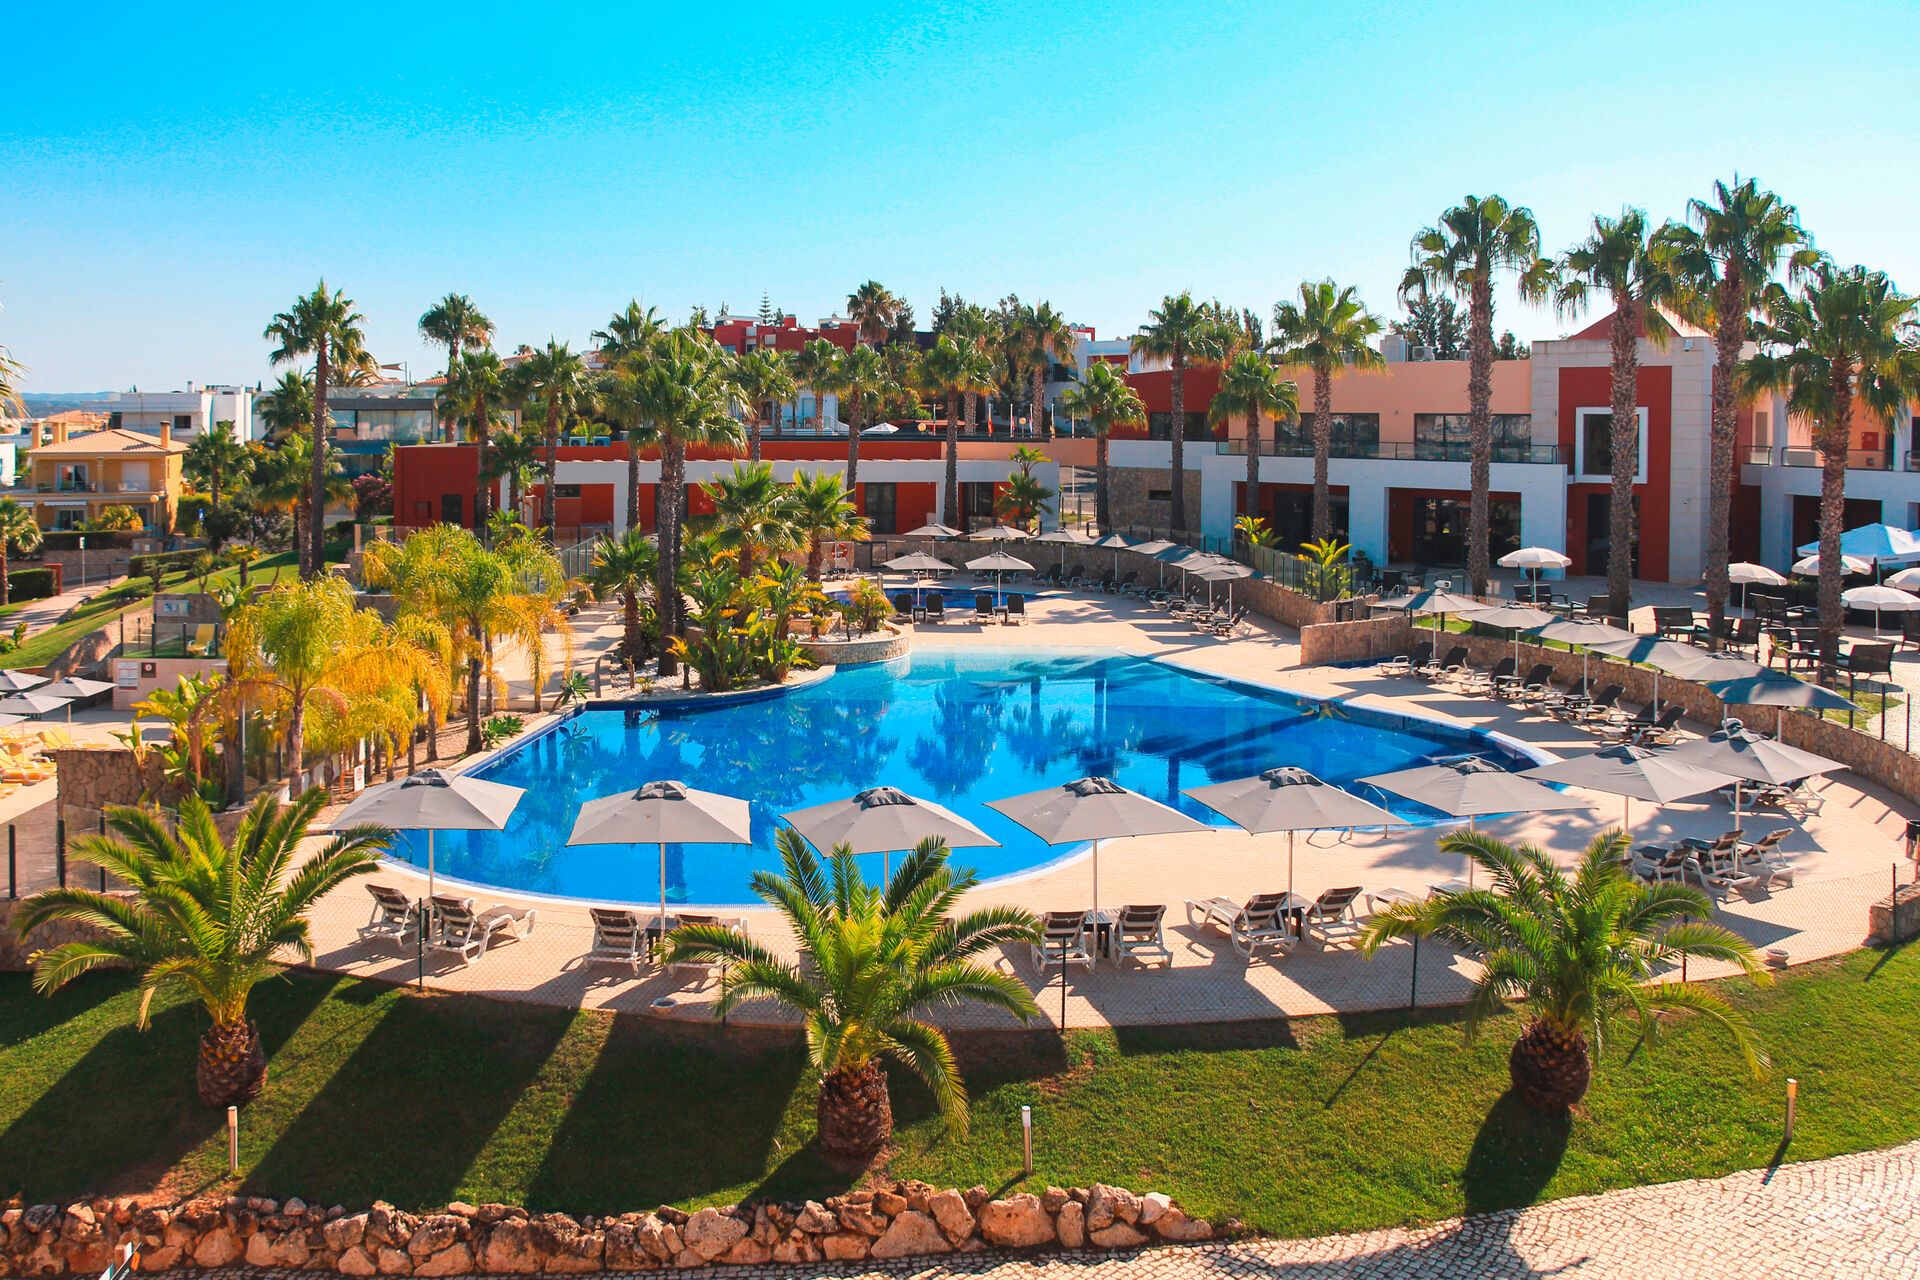 Portugal - Algarve - Faro - Hotel Vitor's Village Resort 4*